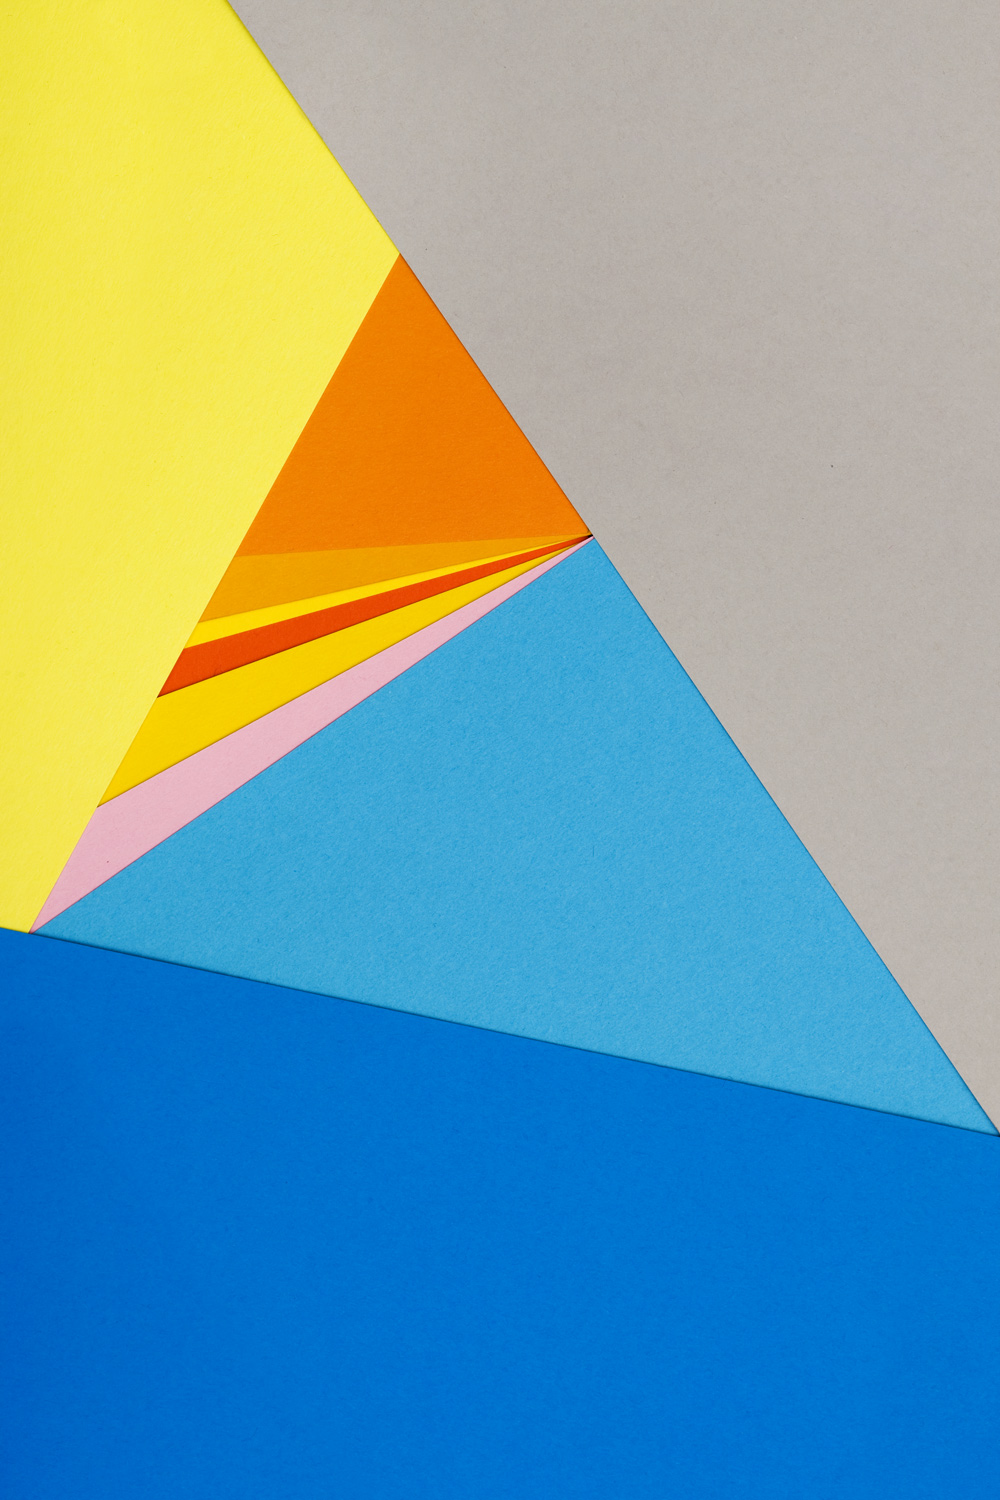 wallpaper design,blue,yellow,orange,triangle,triangle